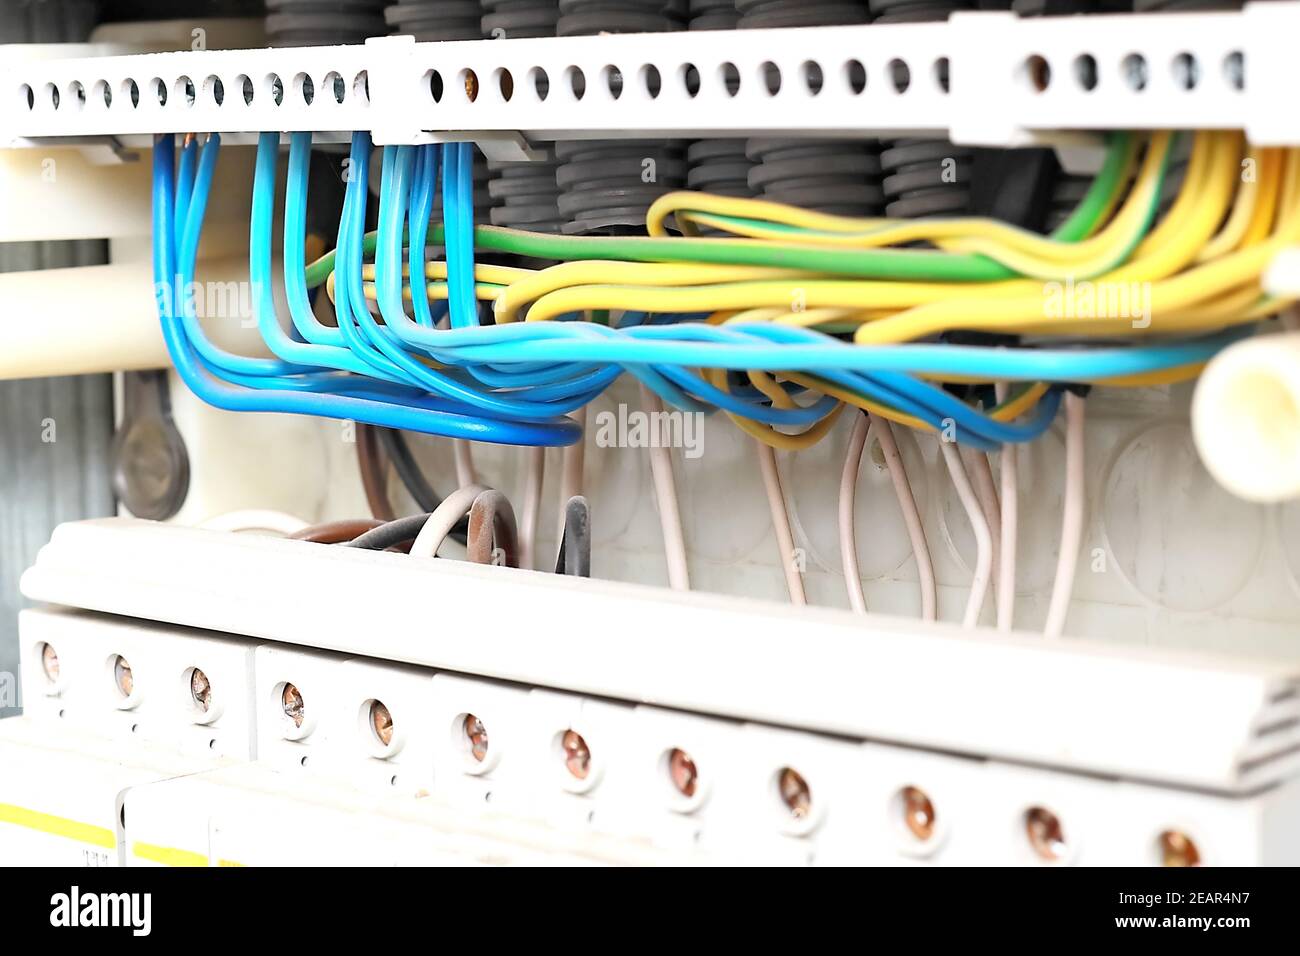 Dies ist eine saubere elektrische Abschirmung mit der korrekten Verdrahtung der neuen Drähte in Nahaufnahme. Stockfoto